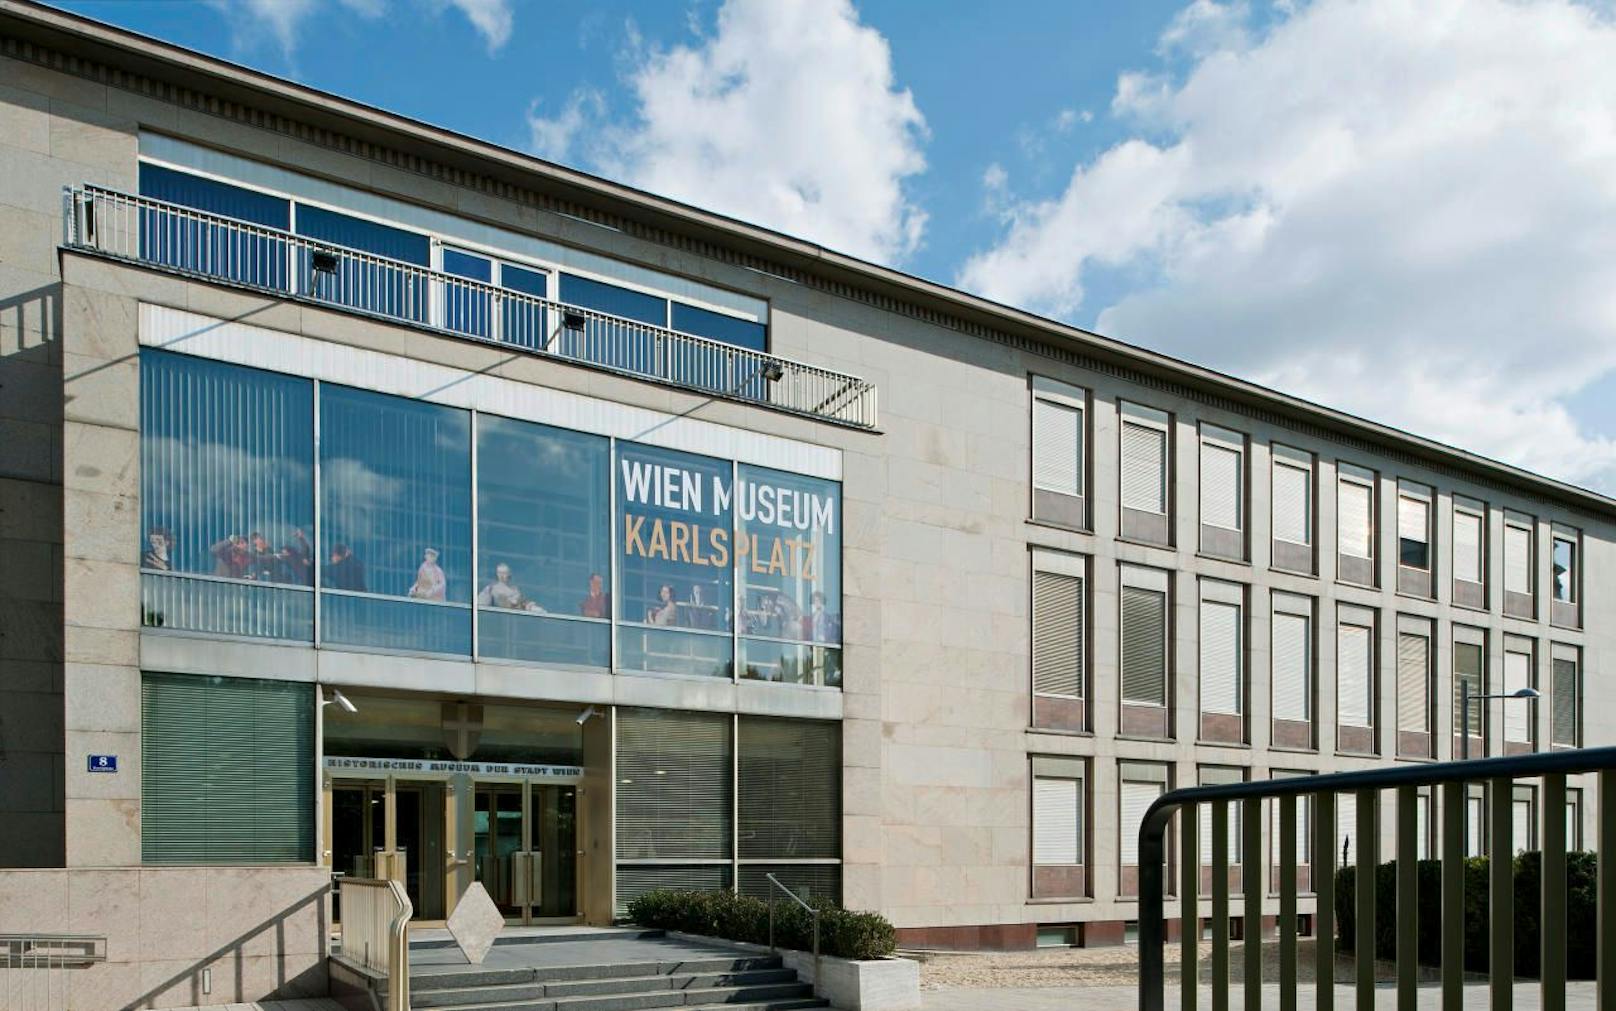 Ab 4. Februar bleibt das Wien Museum für den großen Umbau geschlossen. Bis dahin ist der Eintritt gratis.